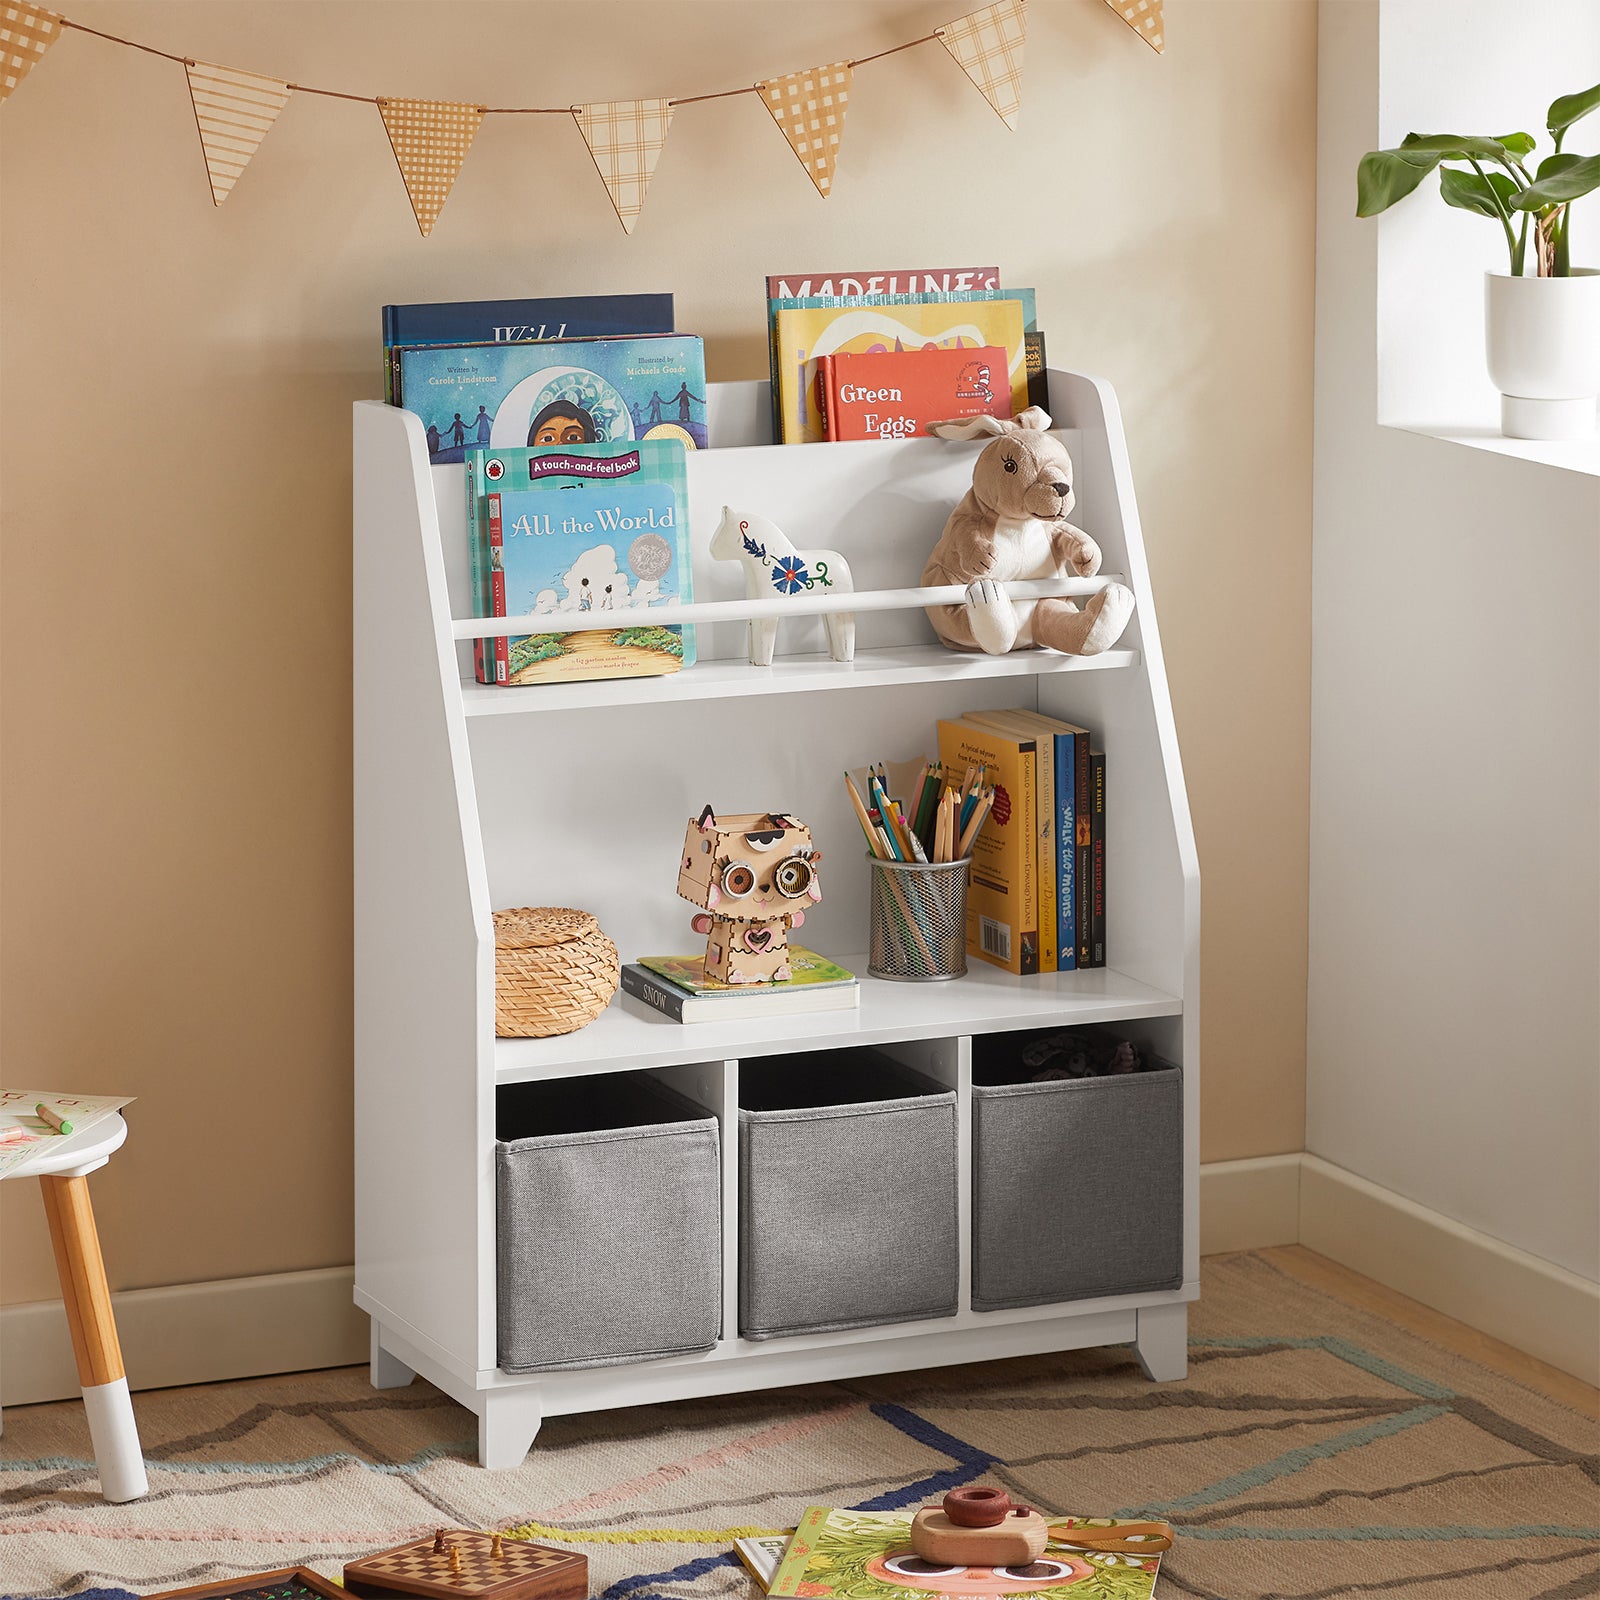 SoBuy KMB34-W, Children Kids Bookcase Book Shelf Toy Shelf Storage Display Shelf Rack Organizer with 3 Fabric Drawers